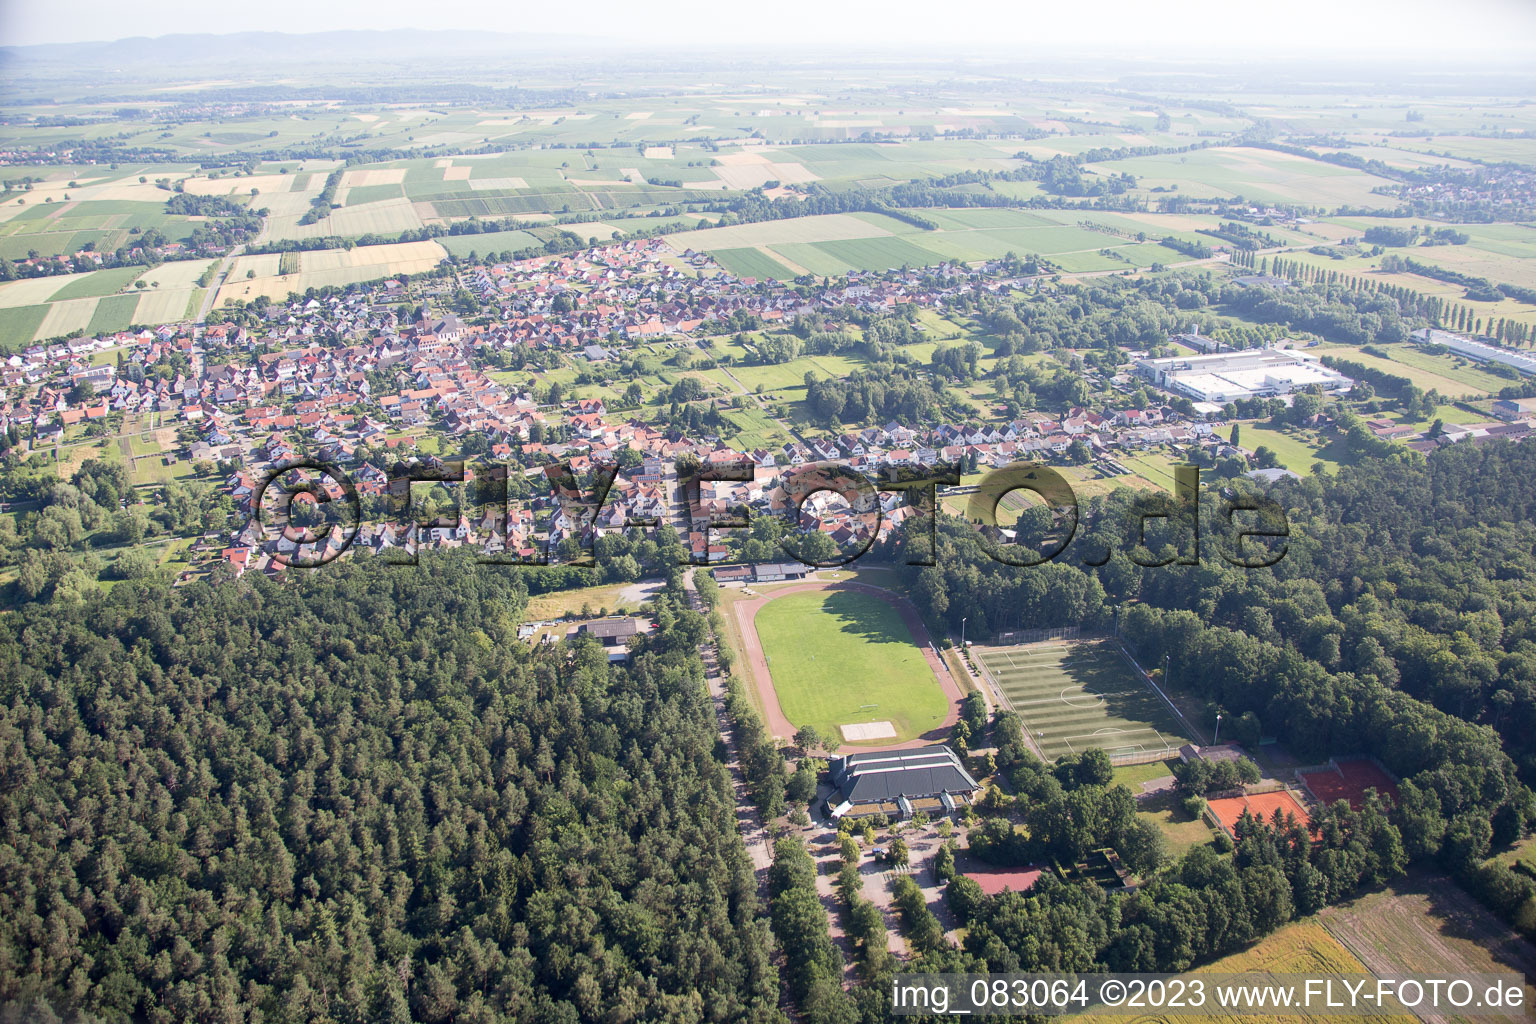 Aerial view of District Schaidt in Wörth am Rhein in the state Rhineland-Palatinate, Germany